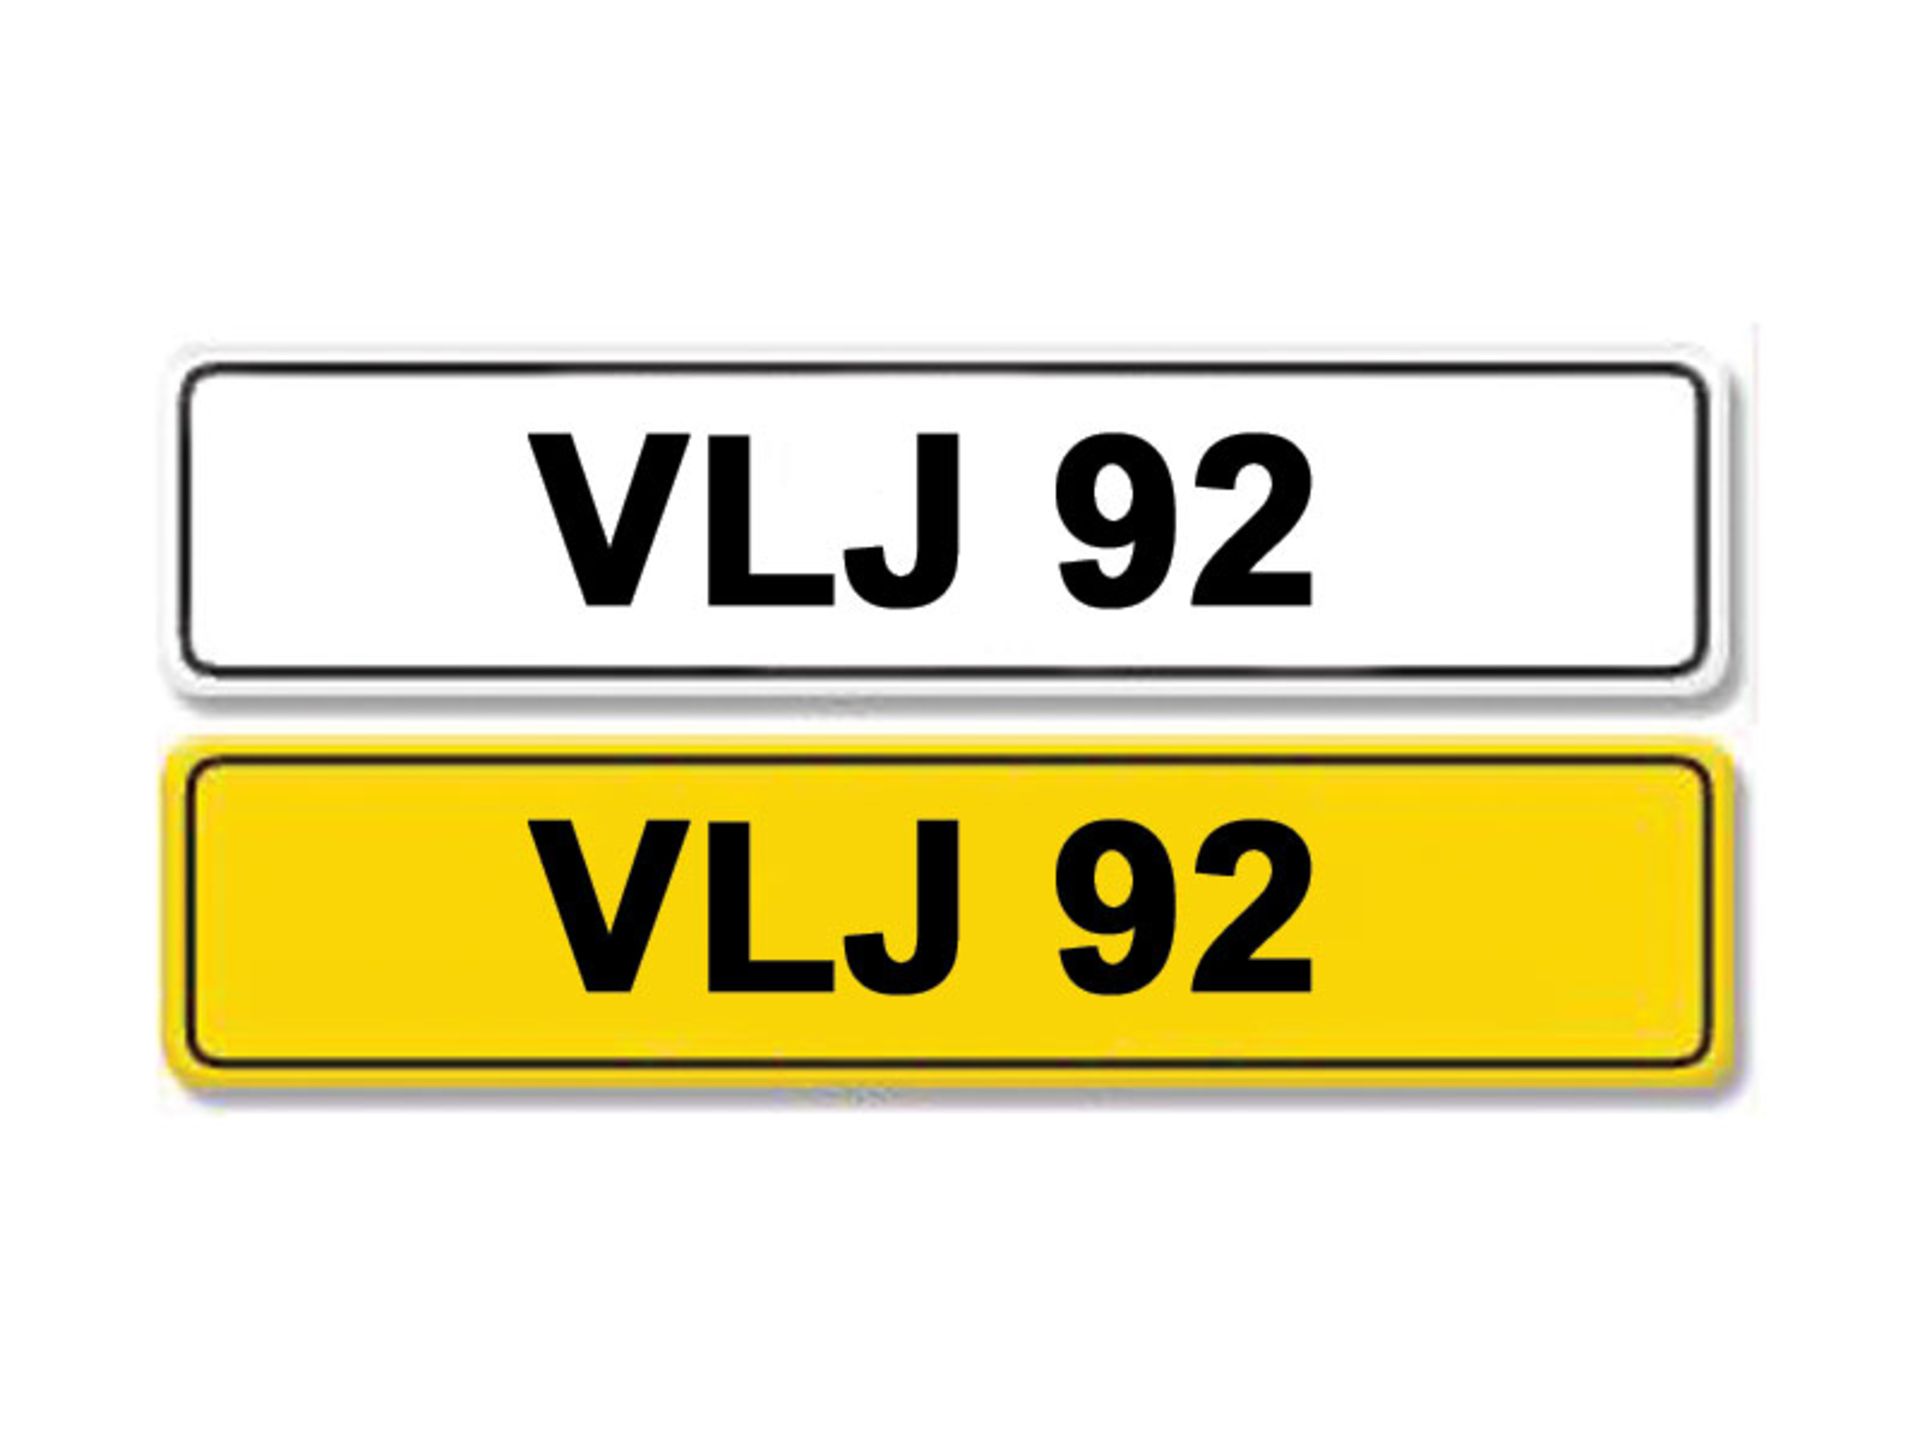 Registration Number VLJ 92